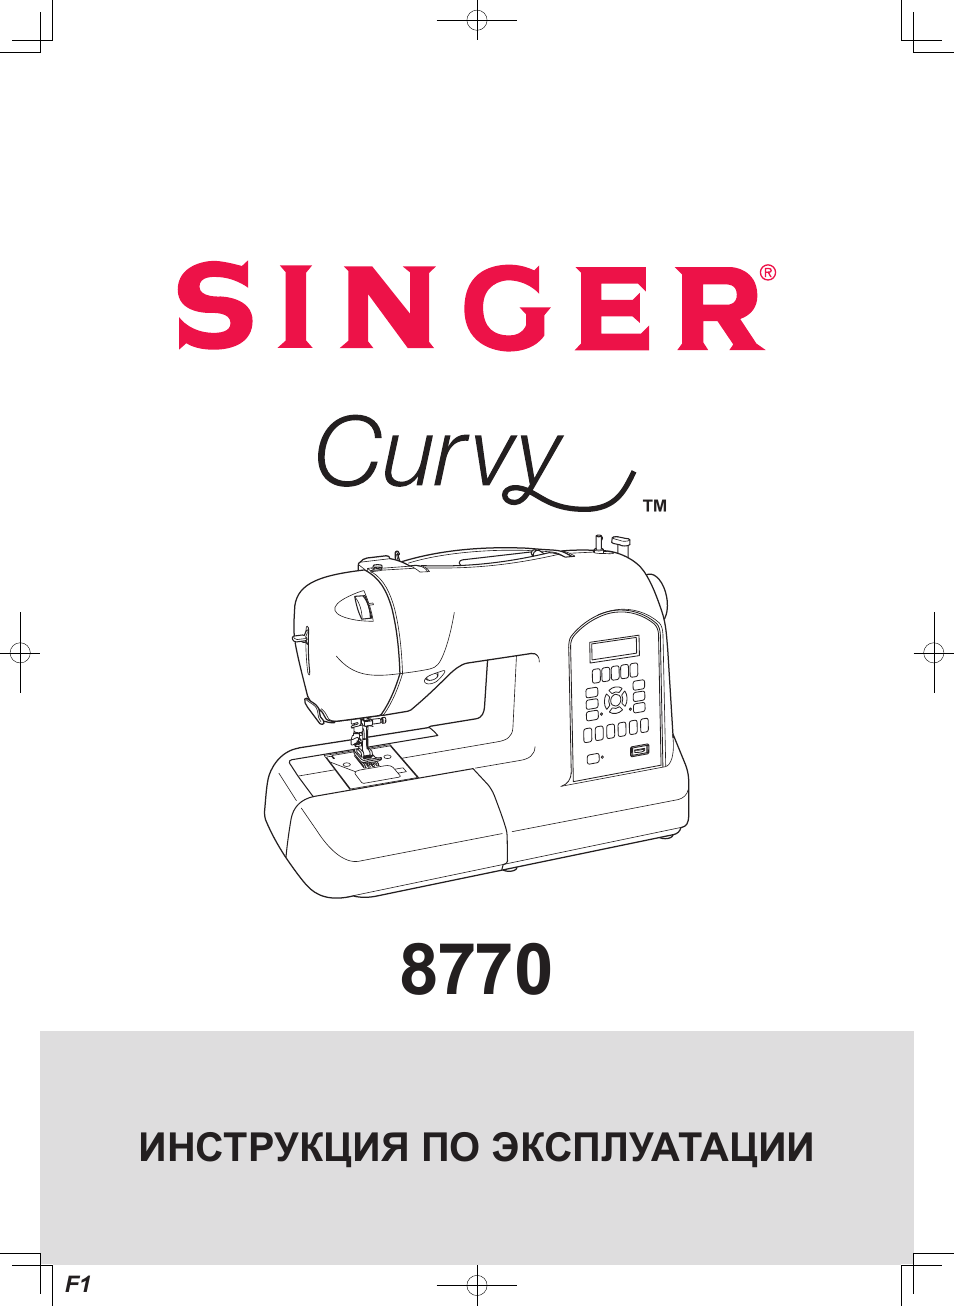 Инструкция по эксплуатации SINGER Curvy 8770 | 51 cтраница